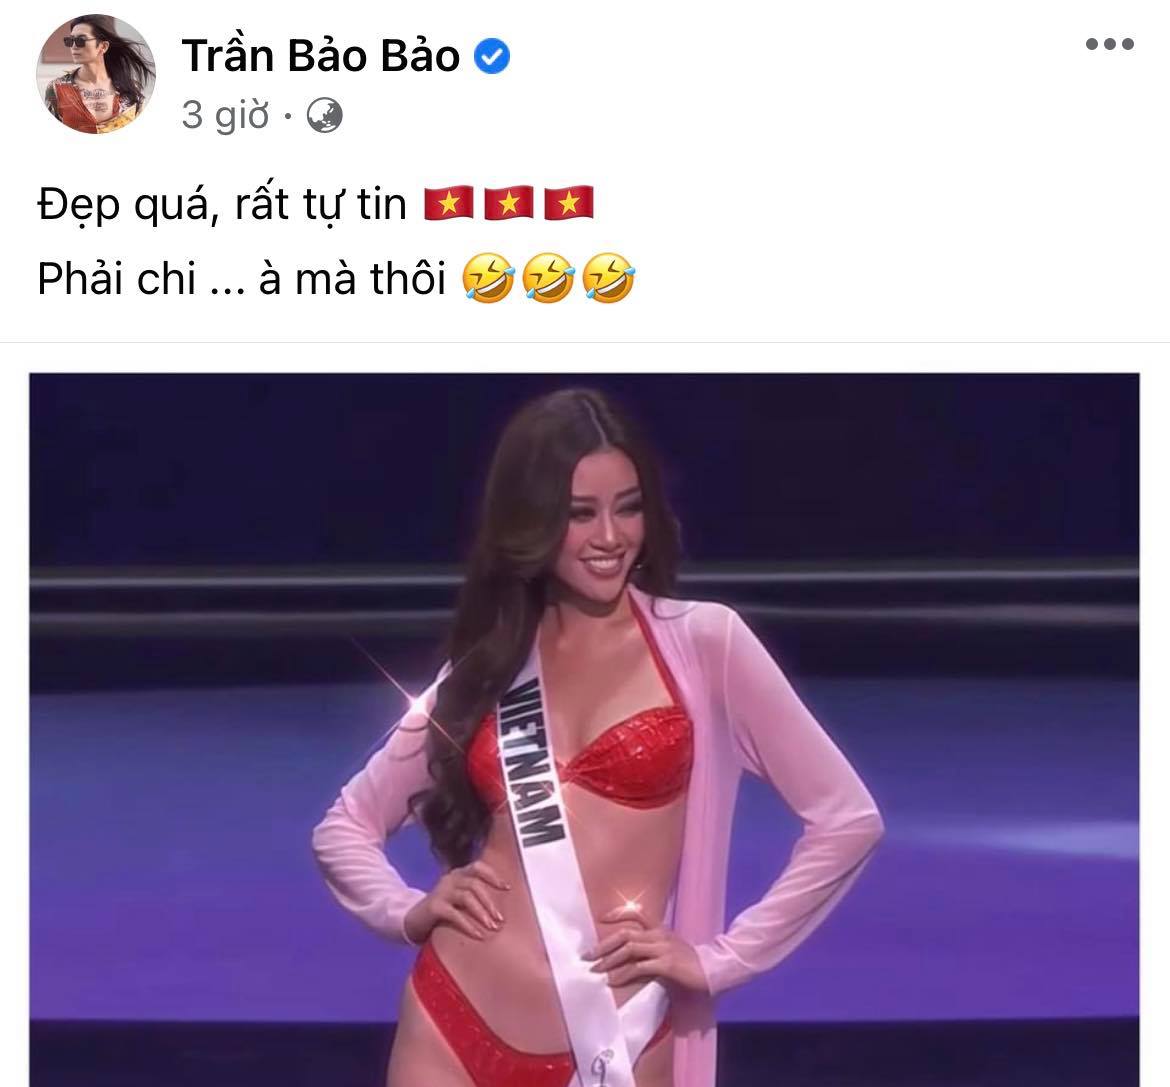 BB Trần lầy lội “cà khịa” phần trình diễn của Khánh Vân ở Bán kết Miss Universe, đề ra chiến lược nghe muốn xỉu ngang - Ảnh 2.